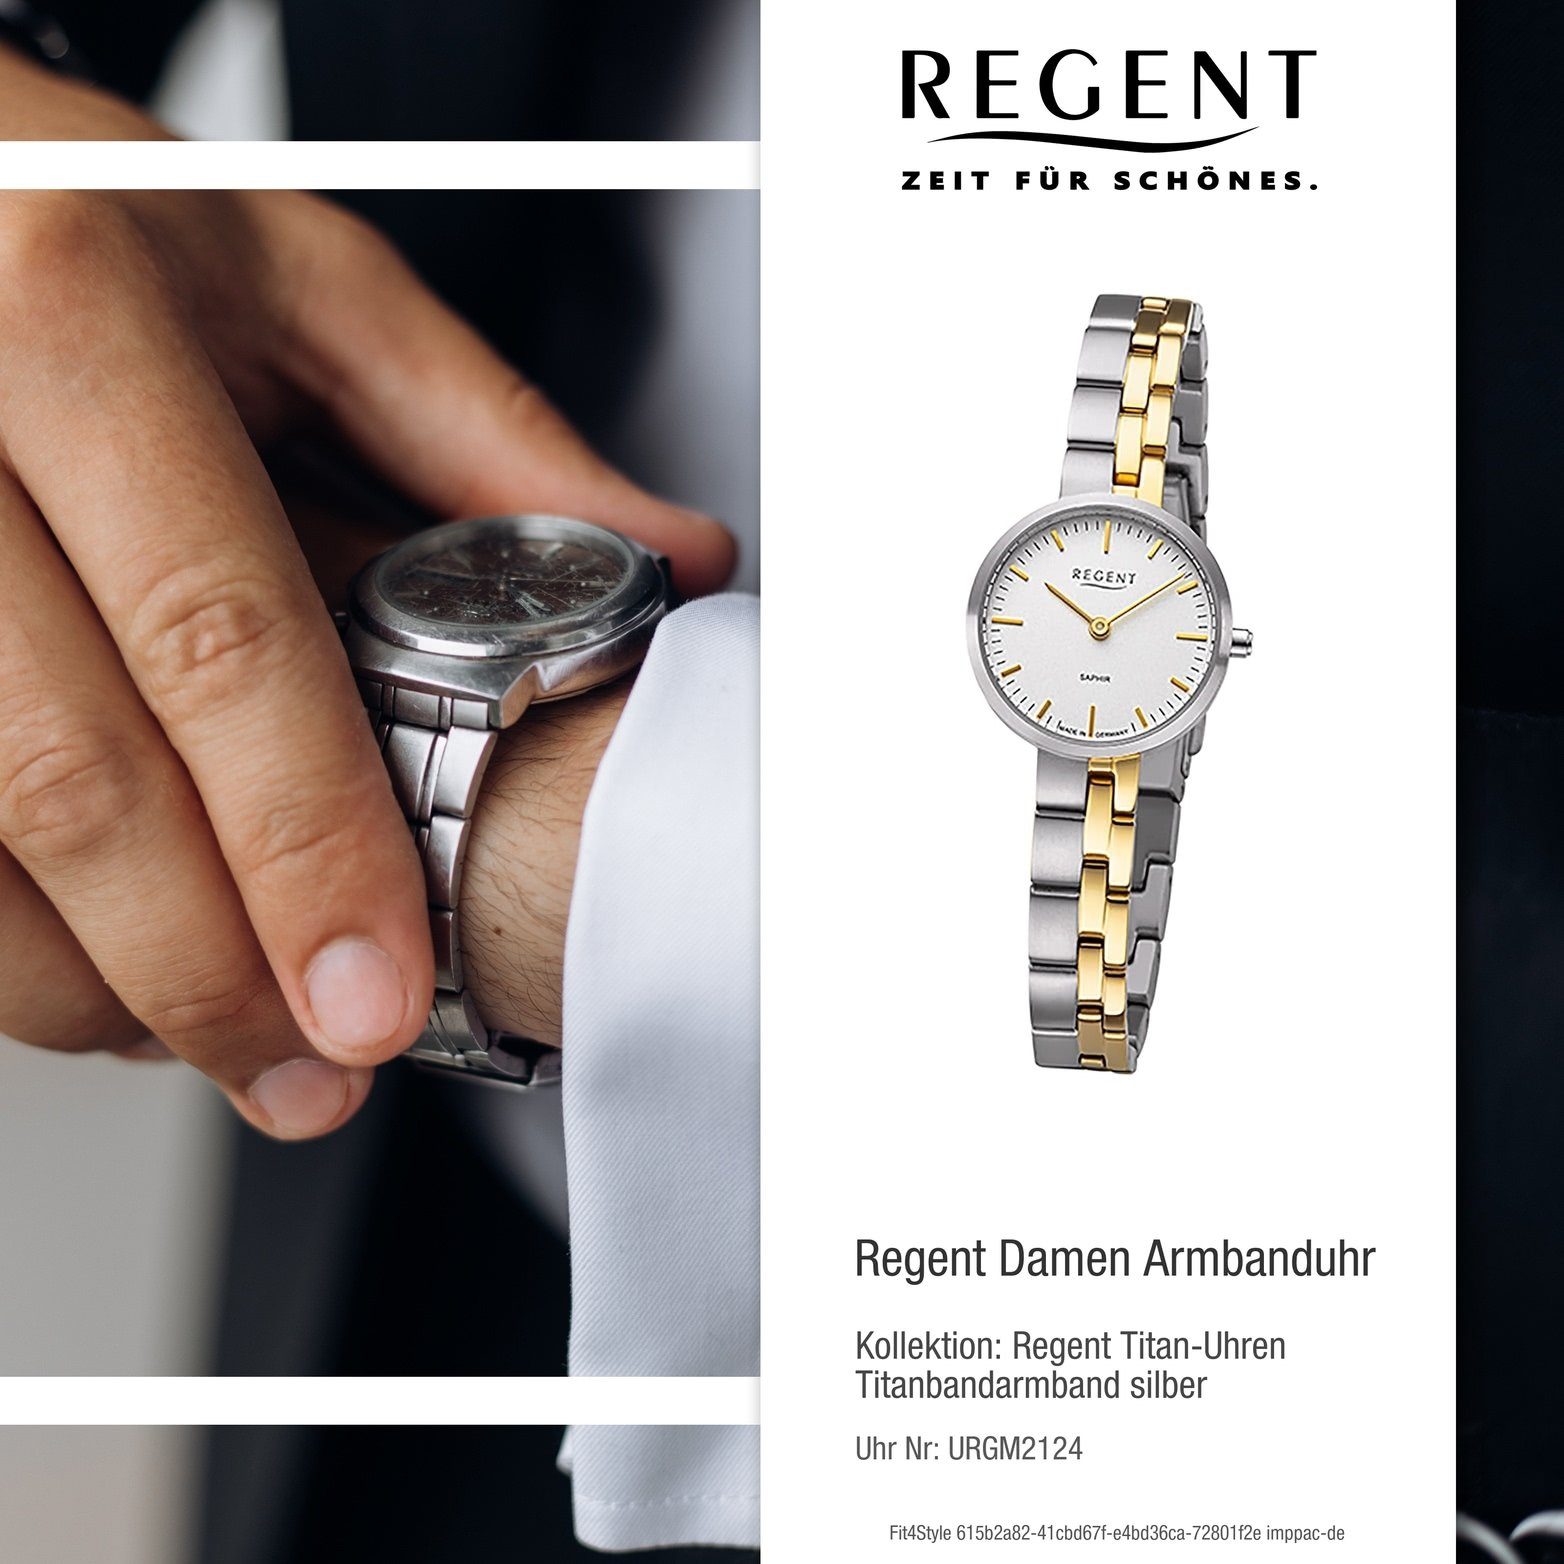 Regent Armbanduhr Damenuhr (26mm) Gehäuse, Titanbandarmband Analog, rundes klein Regent gold, silber, Quarzuhr Damen